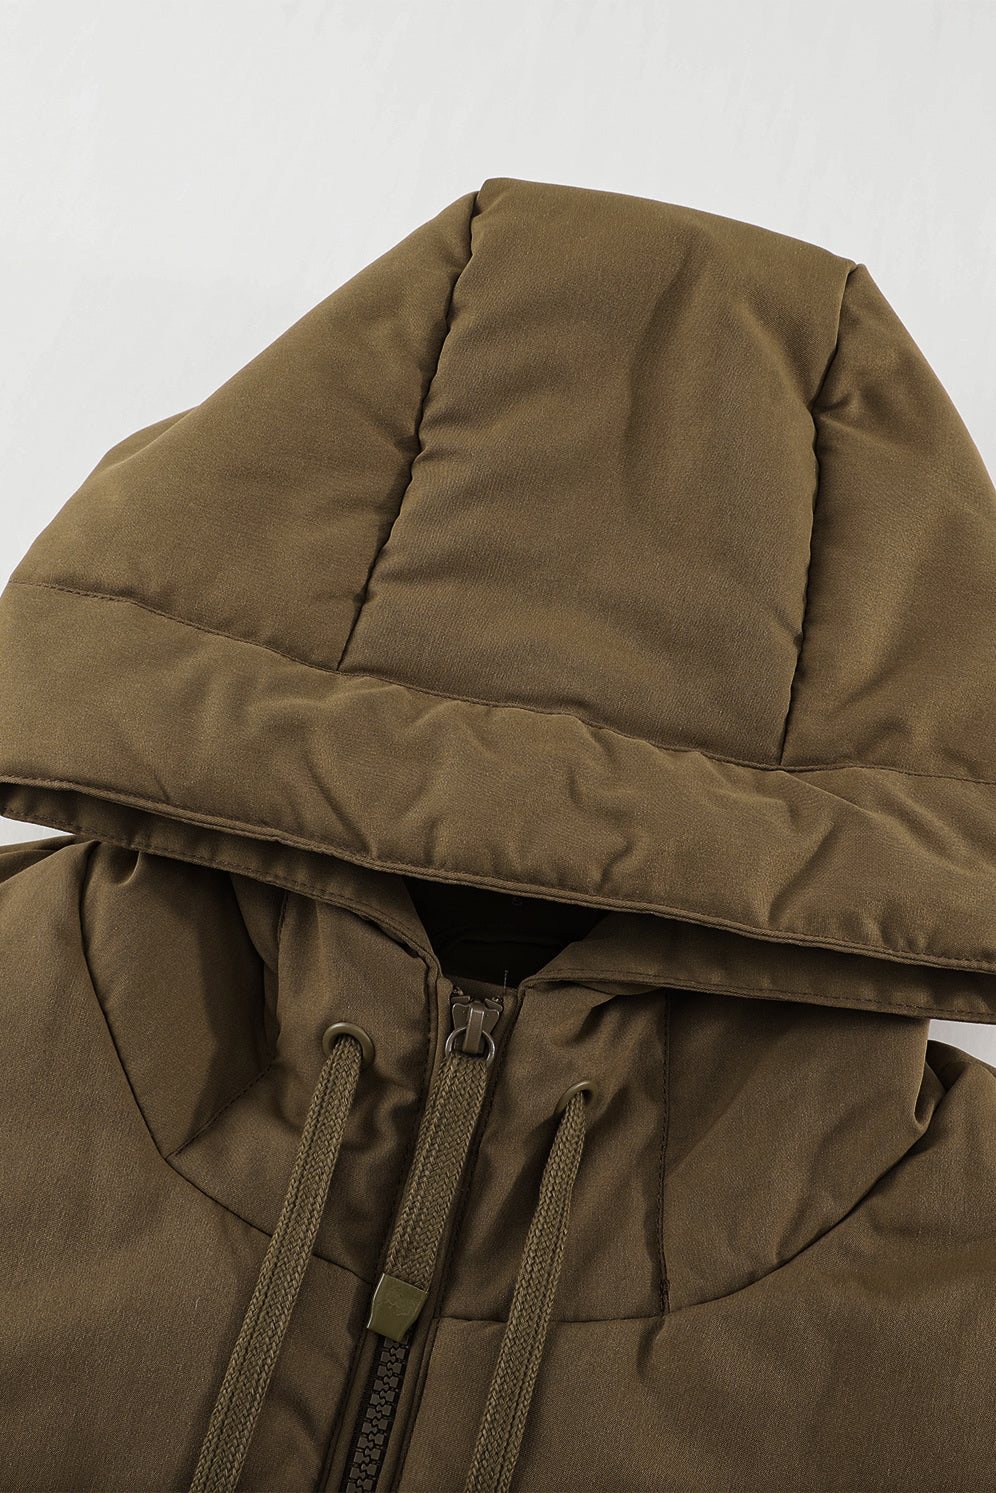 LC856045-17-S, LC856045-17-M, LC856045-17-L, LC856045-17-XL, LC856045-17-2XL, Brown Winter Coats for Women Outdoor Zipper Hooded Coat Outwear with Pockets